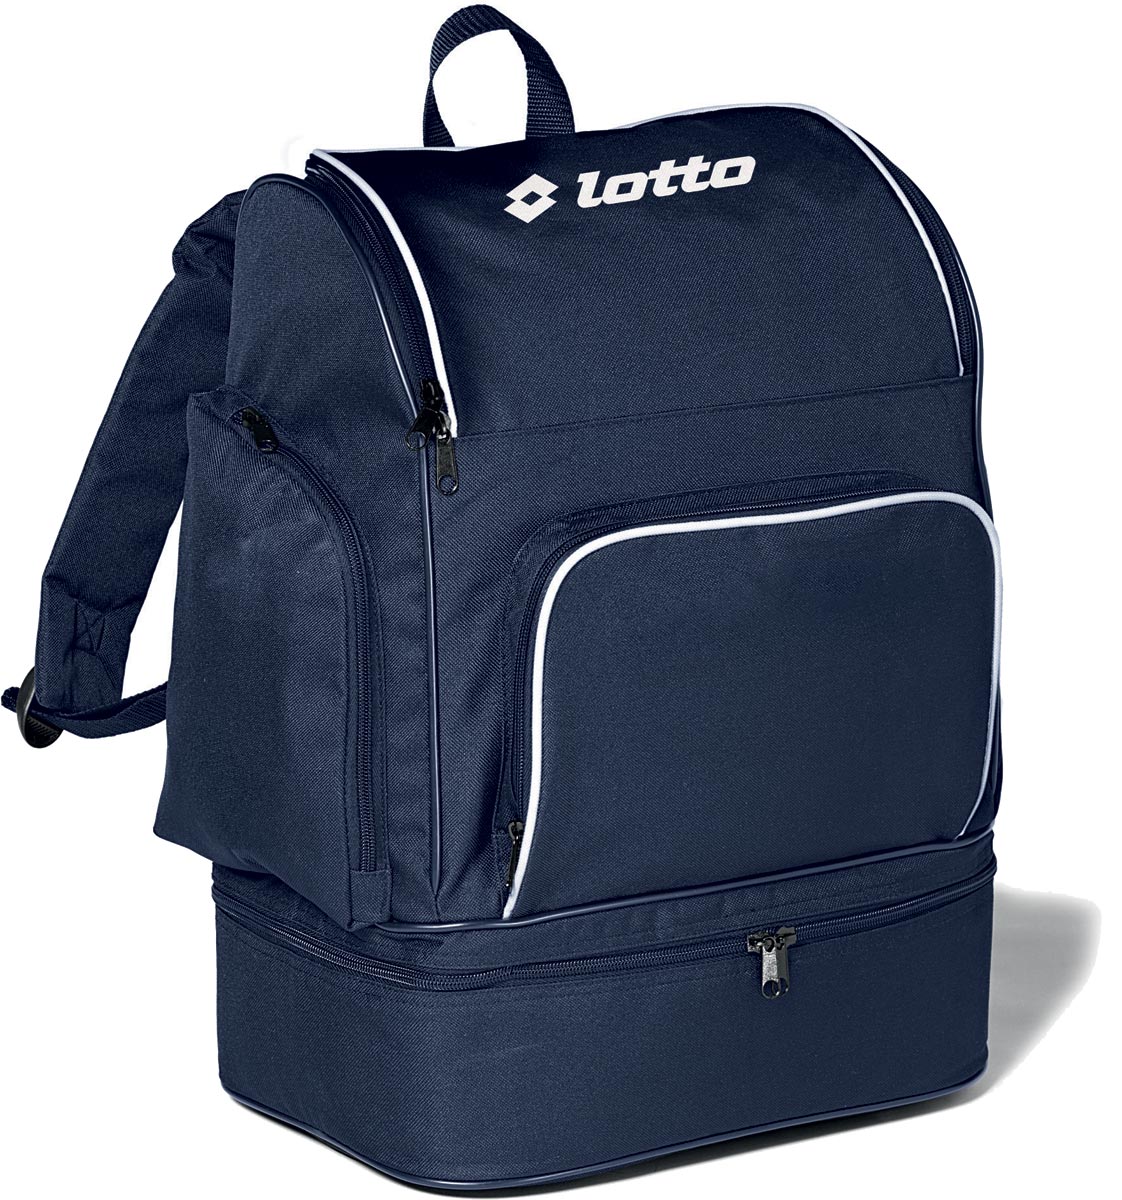 BACKPACK OMEGA - Sport backpack